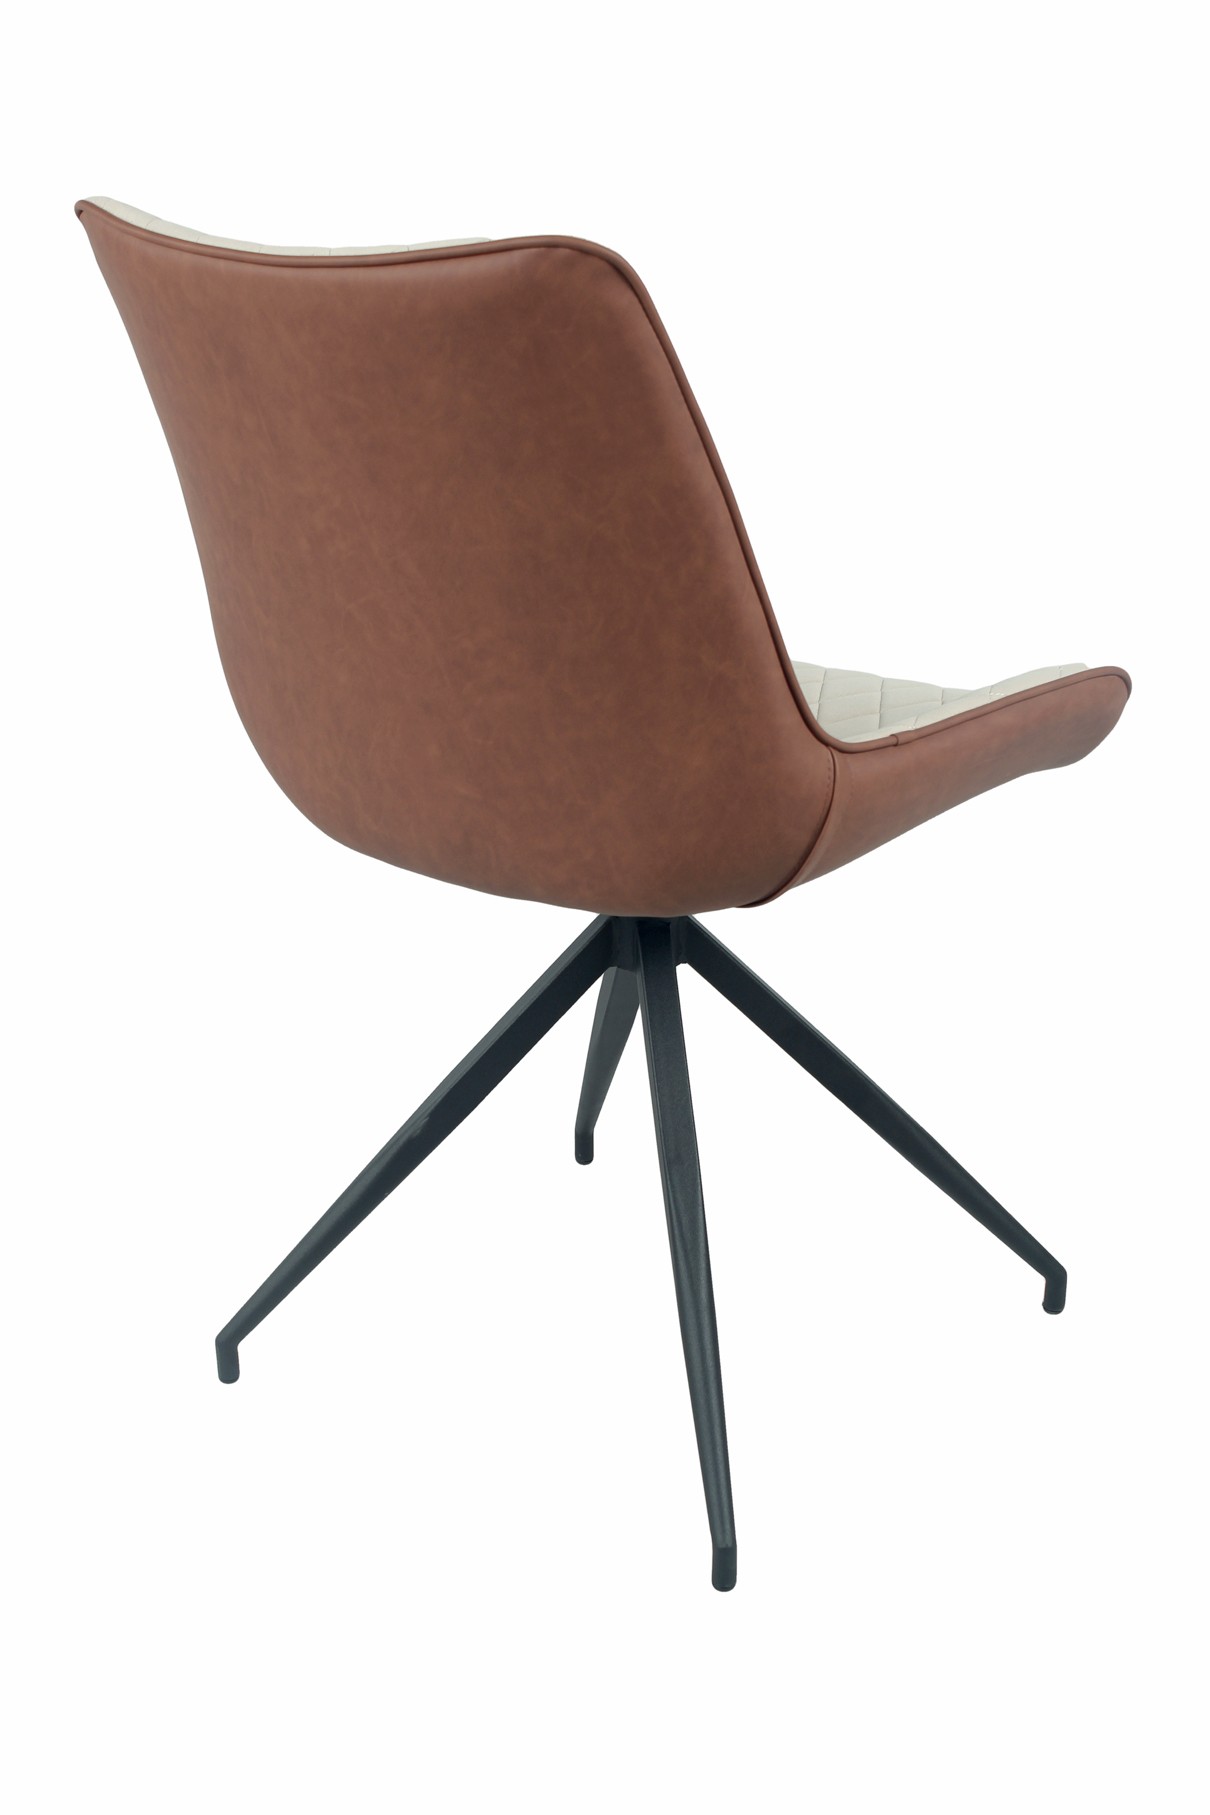 Estila Moderní kožená jídelní židle Vidar z eko kůže s černými kovovými nožičkami dvoutónová béžová hnědá 88cm